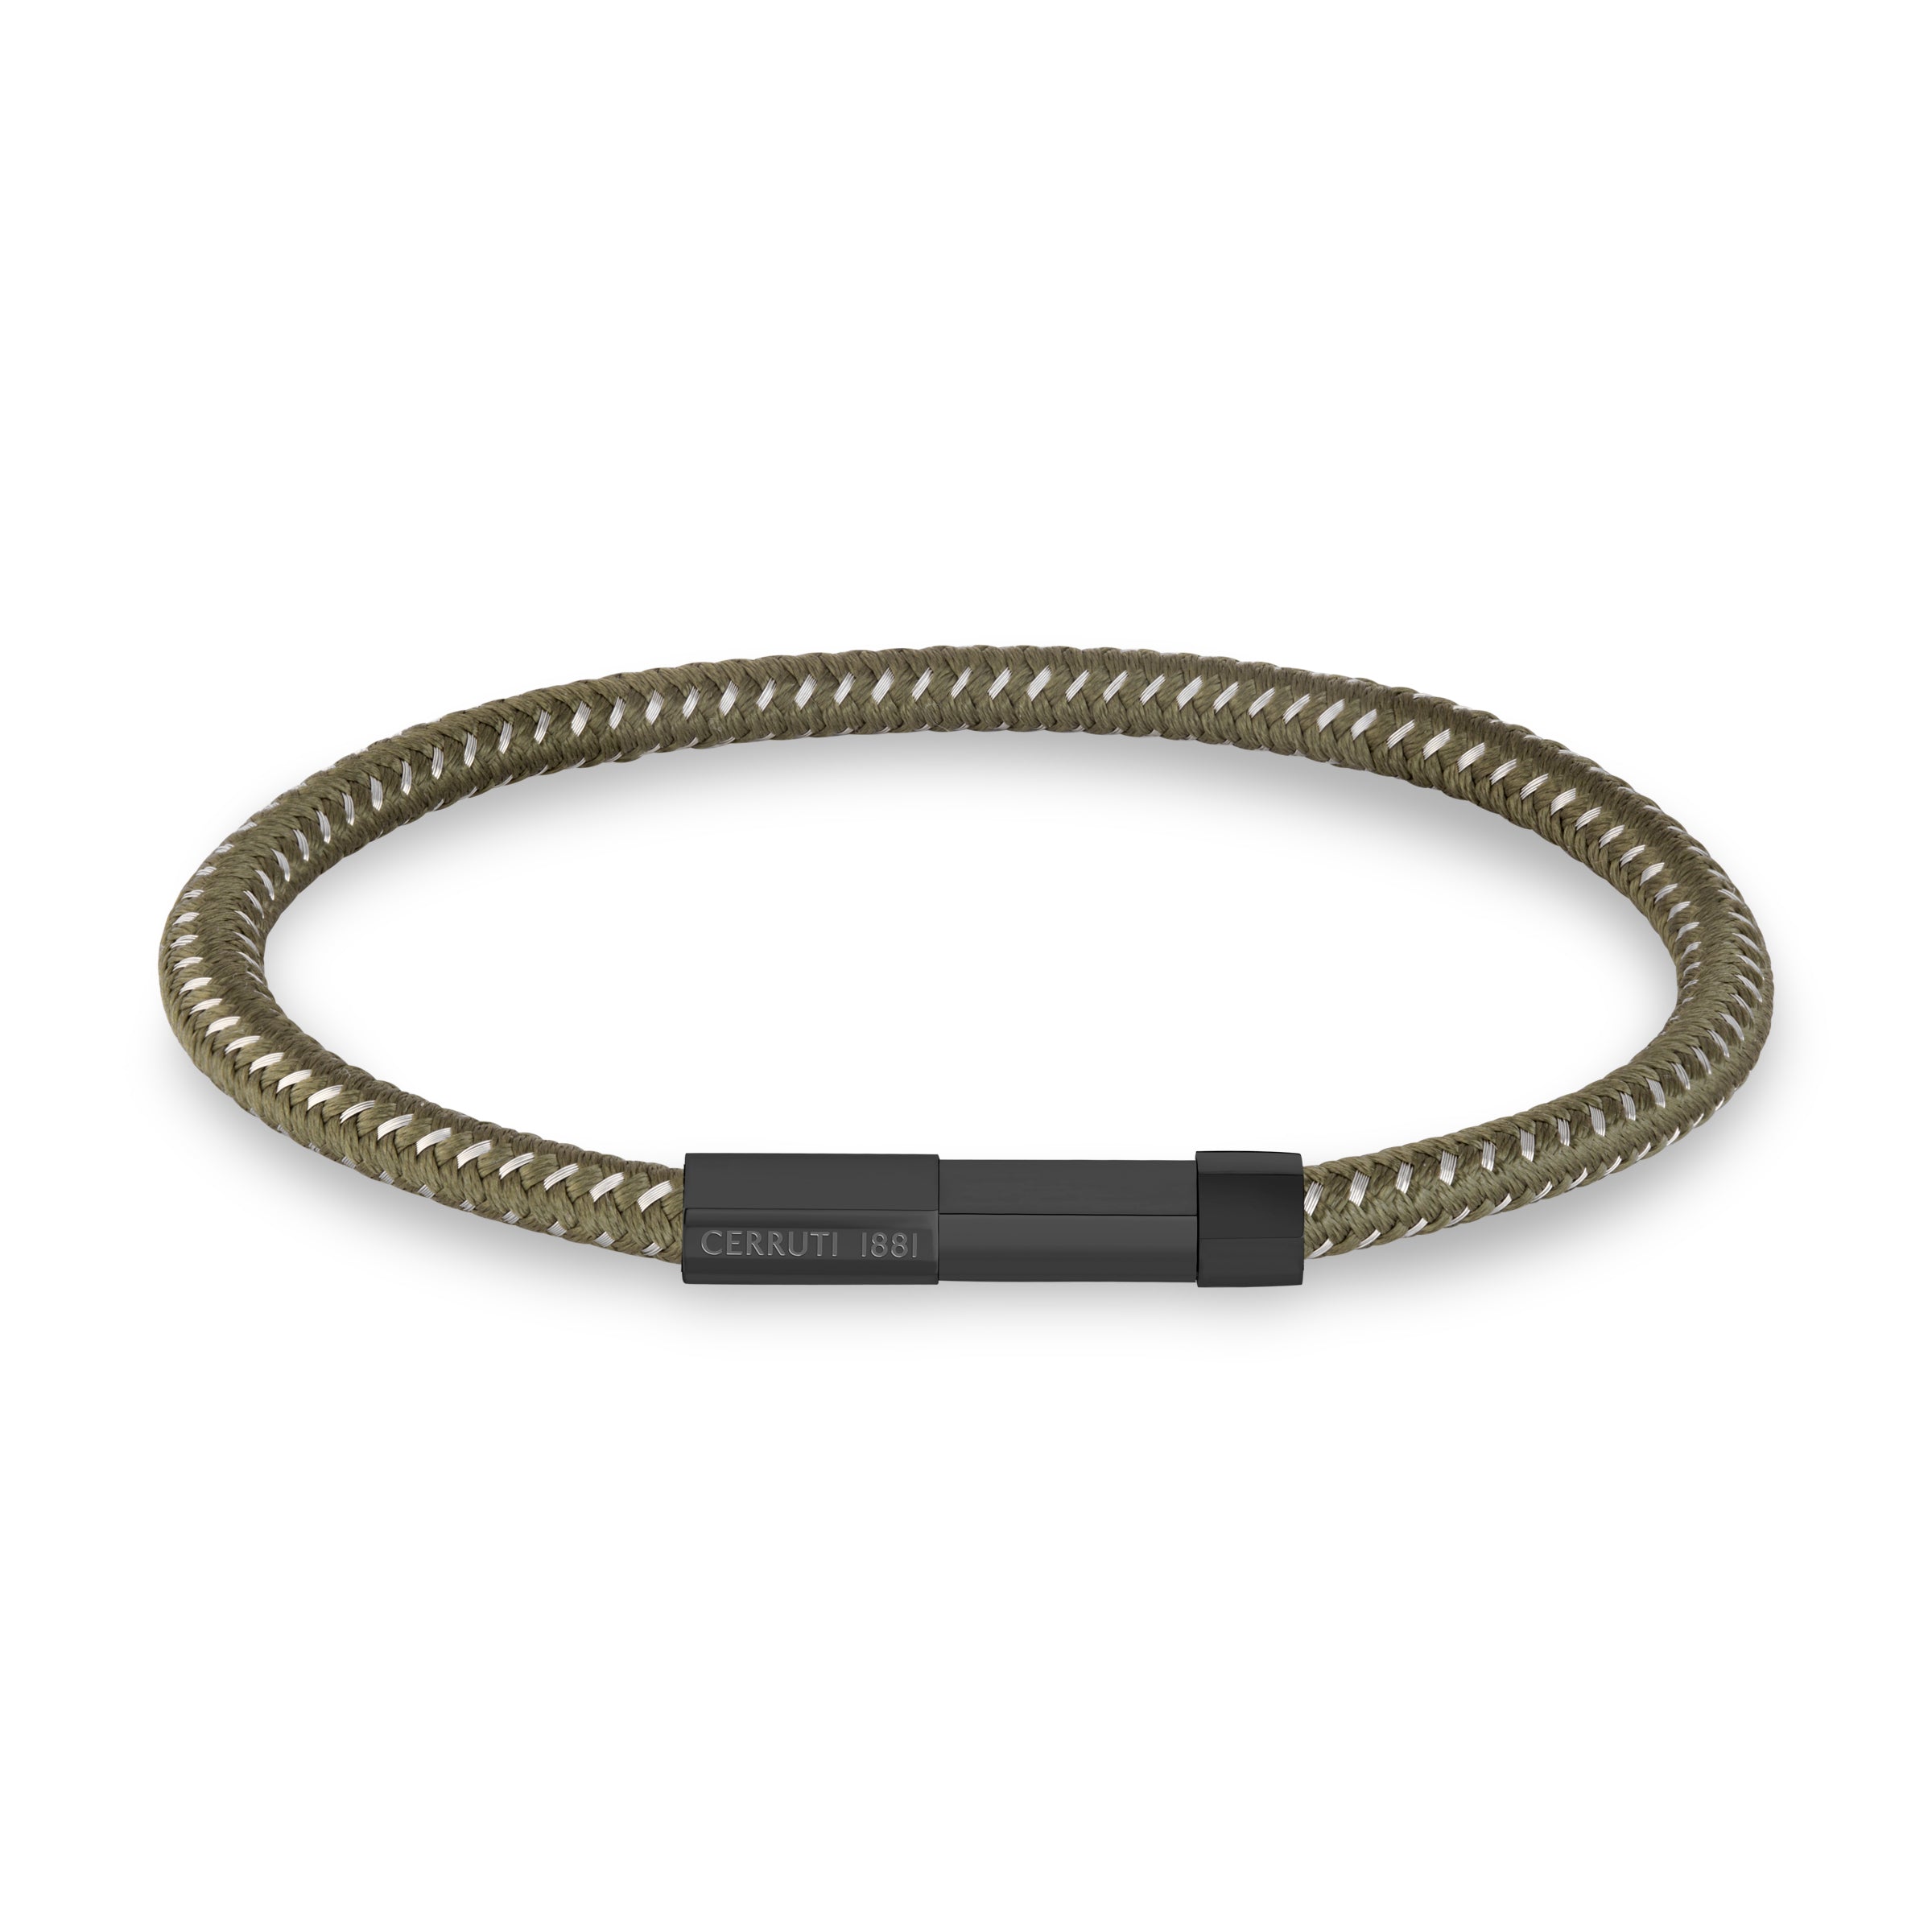 Cerruti Silver Bracelet for Men - CERBR-0039